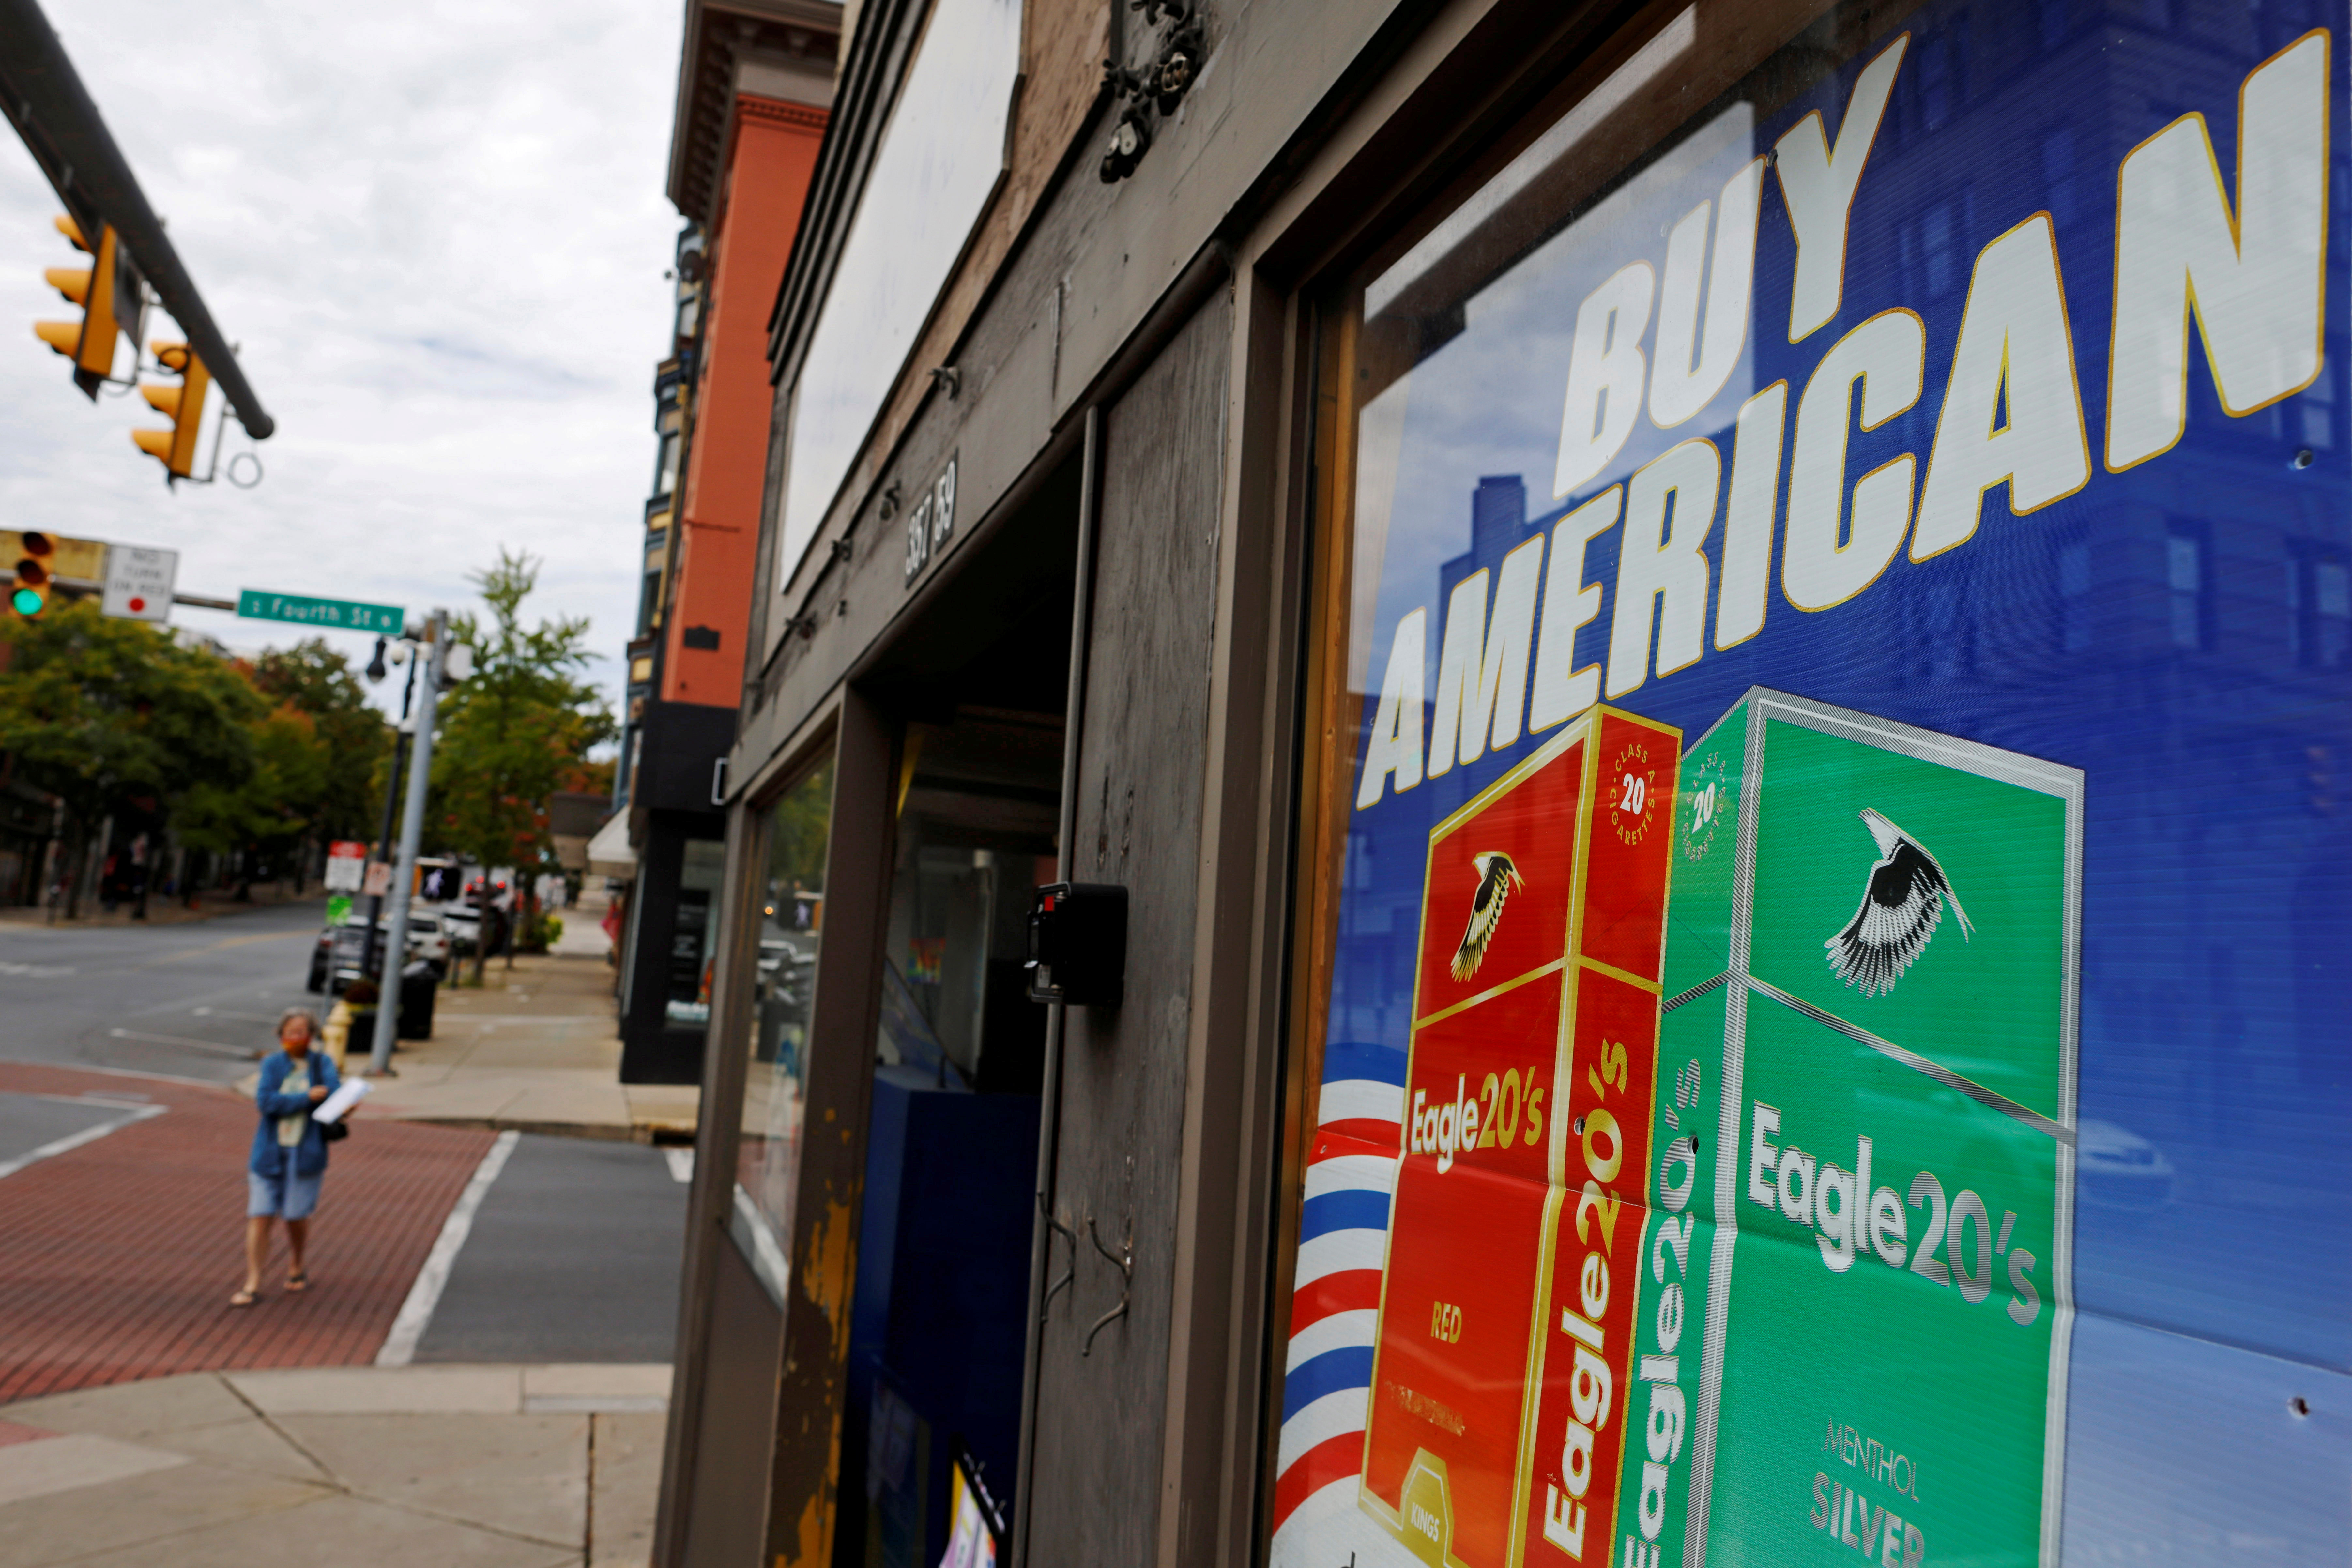 Un cartel reza "Compre Estadounidense" en un escaparate de la ciudad de Easton, en el condado de Northampton, Pensilvania (REUTERS/Brian Snyder/File Photo)